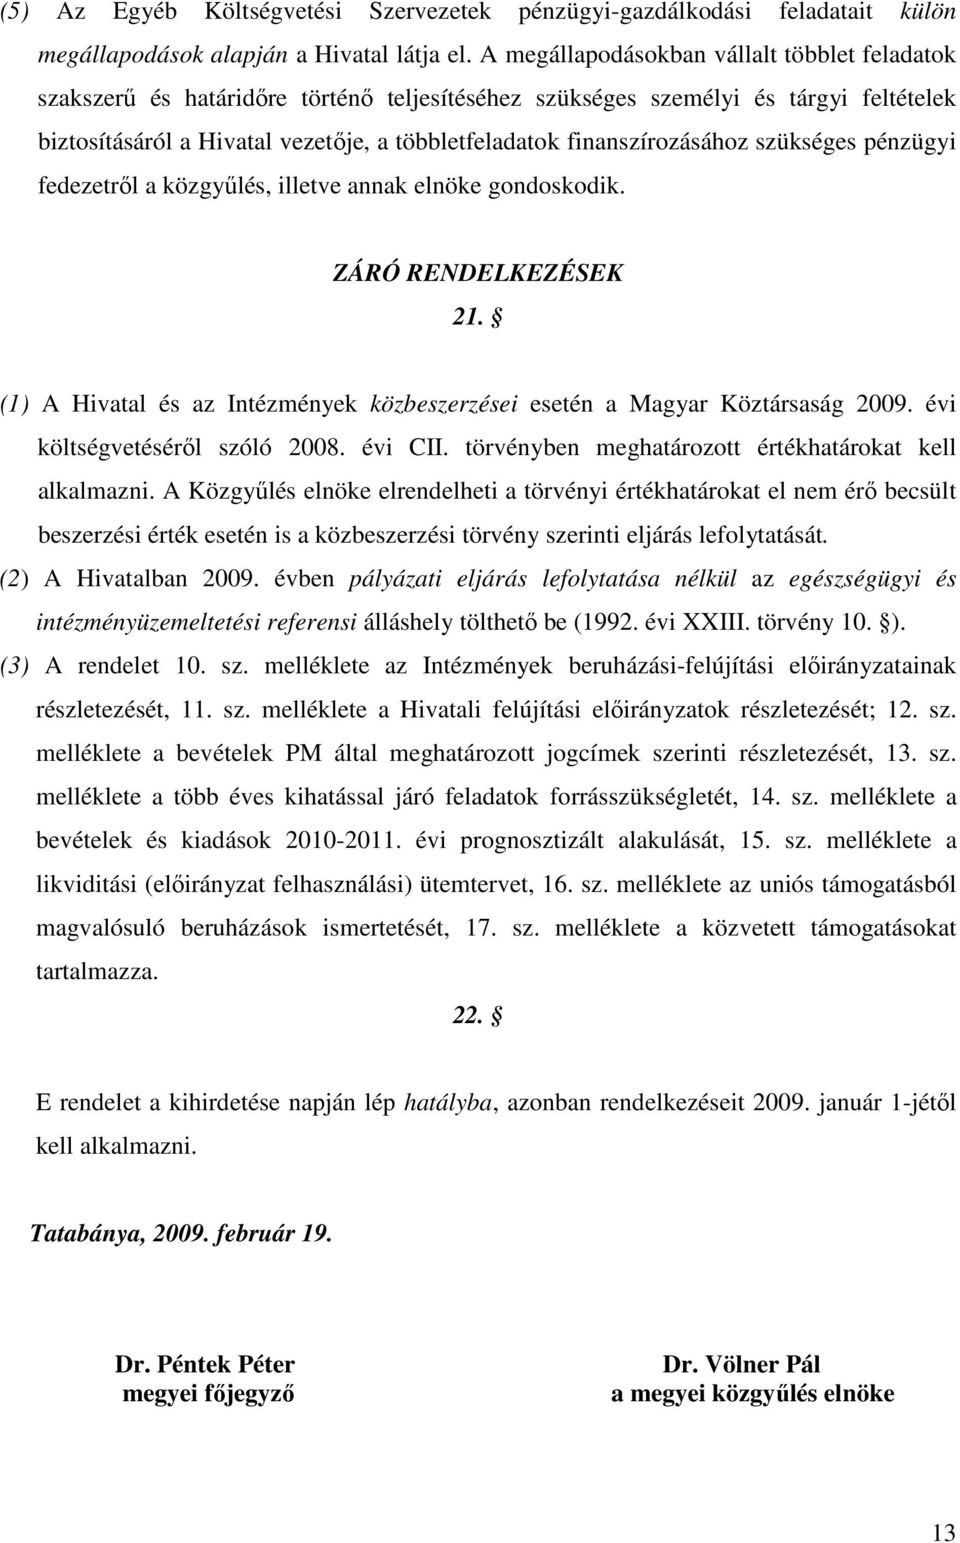 finanszírozásához szükséges pénzügyi fedezetrıl a közgyőlés, illetve annak elnöke gondoskodik. ZÁRÓ RENDELKEZÉSEK 21. (1) A Hivatal és az Intézmények közbeszerzései esetén a Magyar Köztársaság 2009.